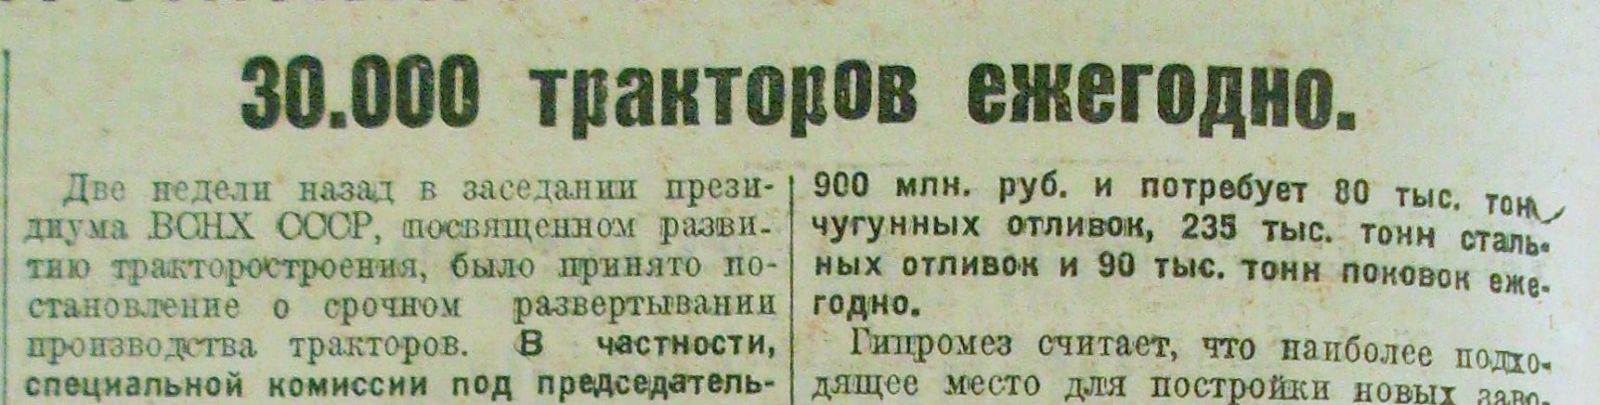 «Харьковский пролетарий» за 29 вересня 1929 року: найменша з обіцяних цифр